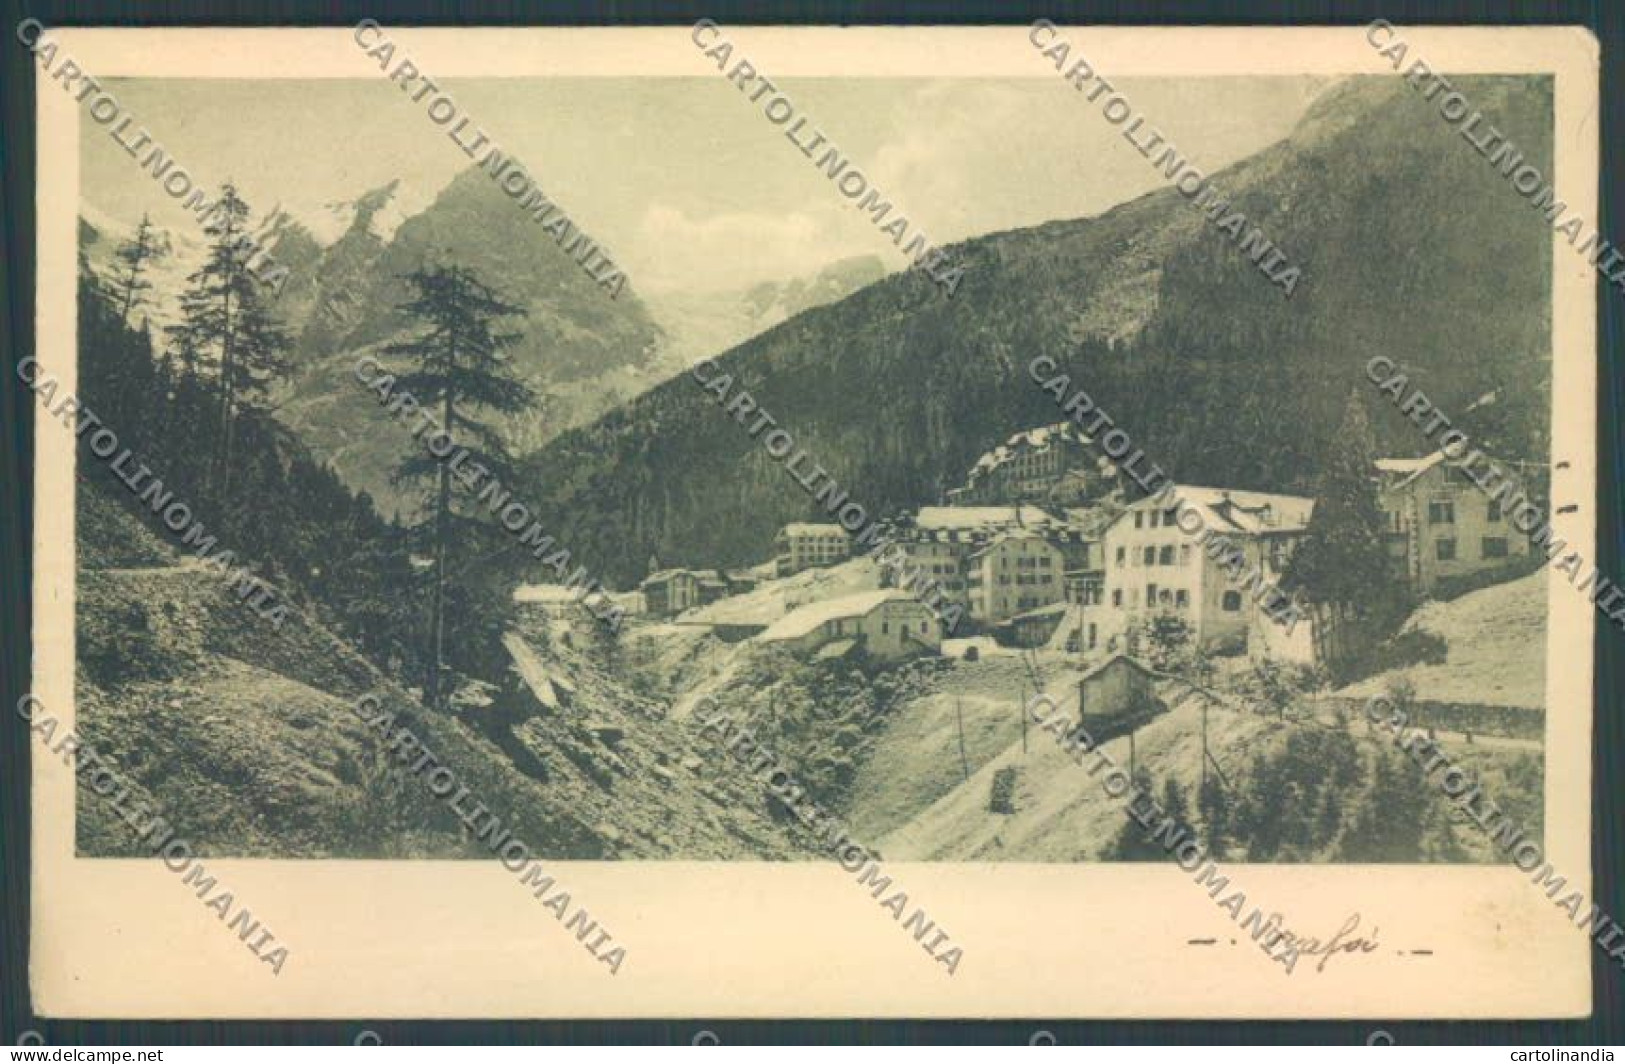 Bolzano Stelvio Trafoi Cartolina ZT9984 - Bolzano (Bozen)